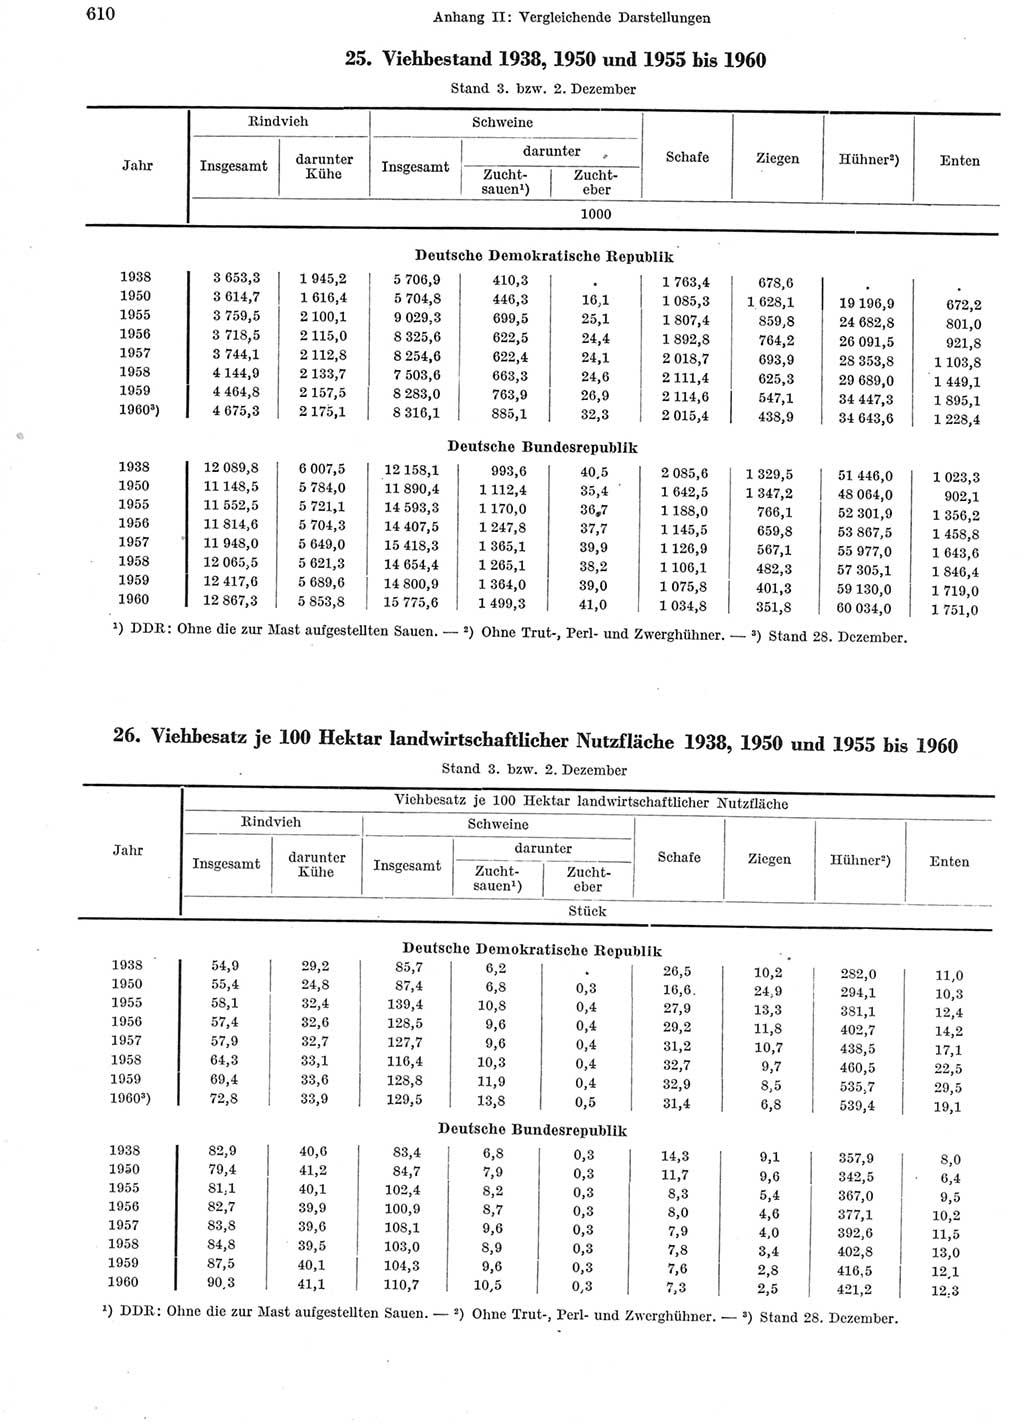 Statistisches Jahrbuch der Deutschen Demokratischen Republik (DDR) 1960-1961, Seite 610 (Stat. Jb. DDR 1960-1961, S. 610)